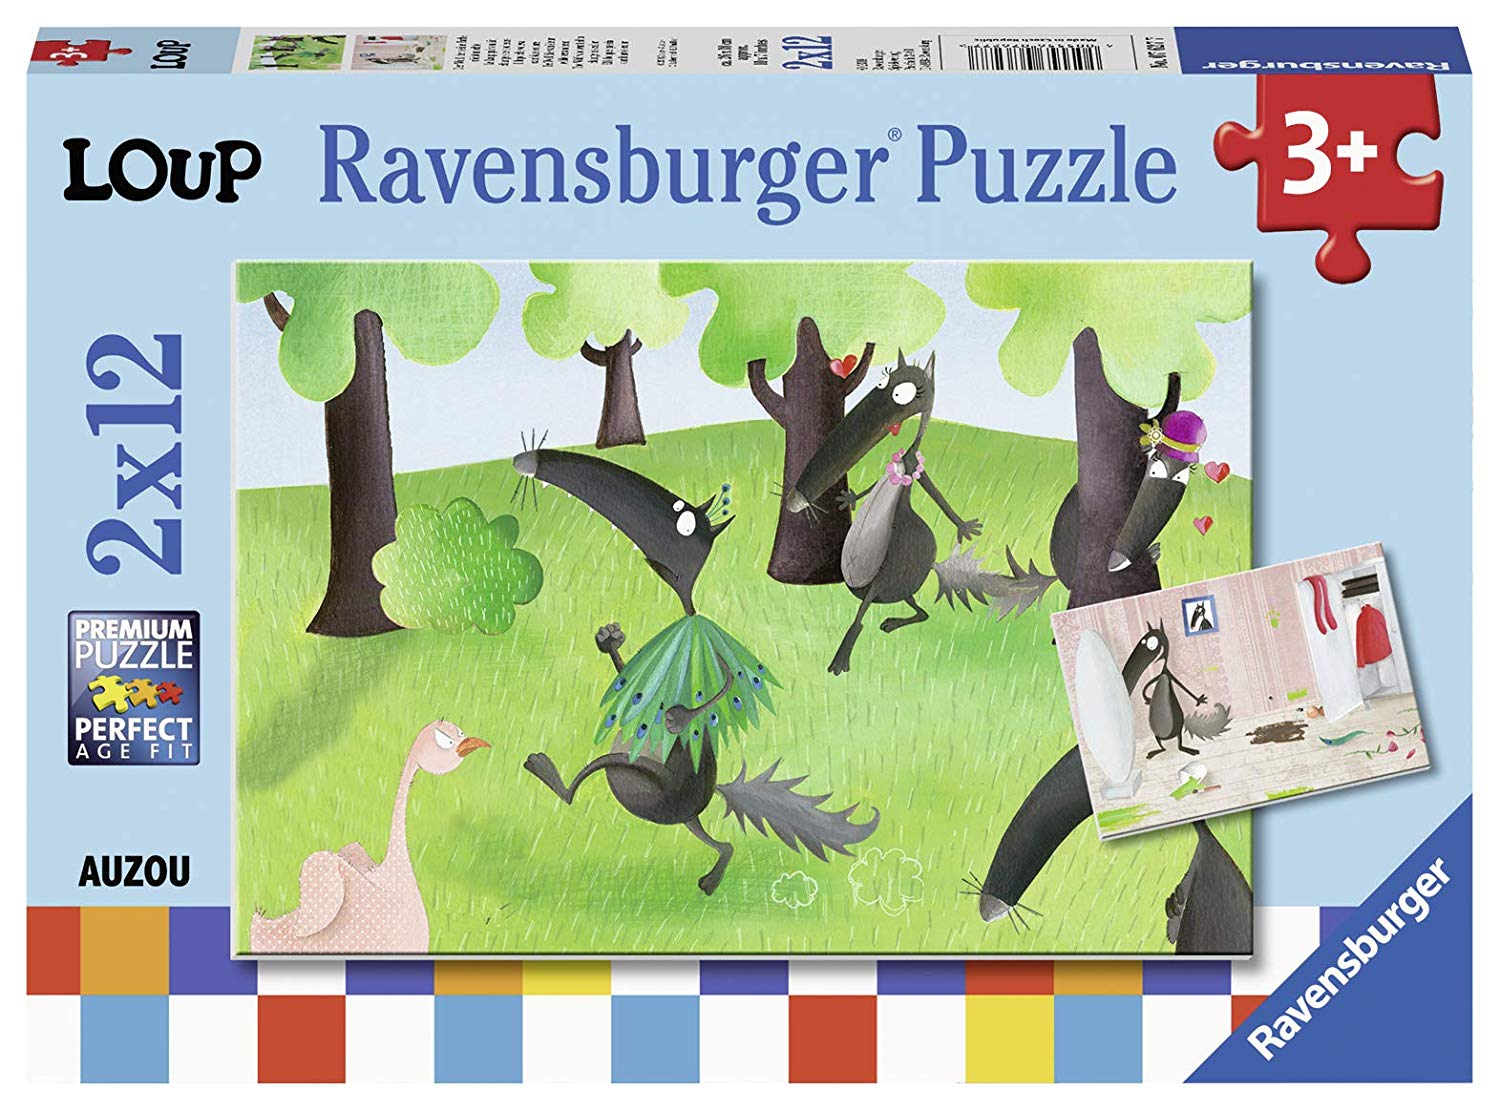 Ravensburger Puzzle 12 Pieces 2 Puzzles – Loup